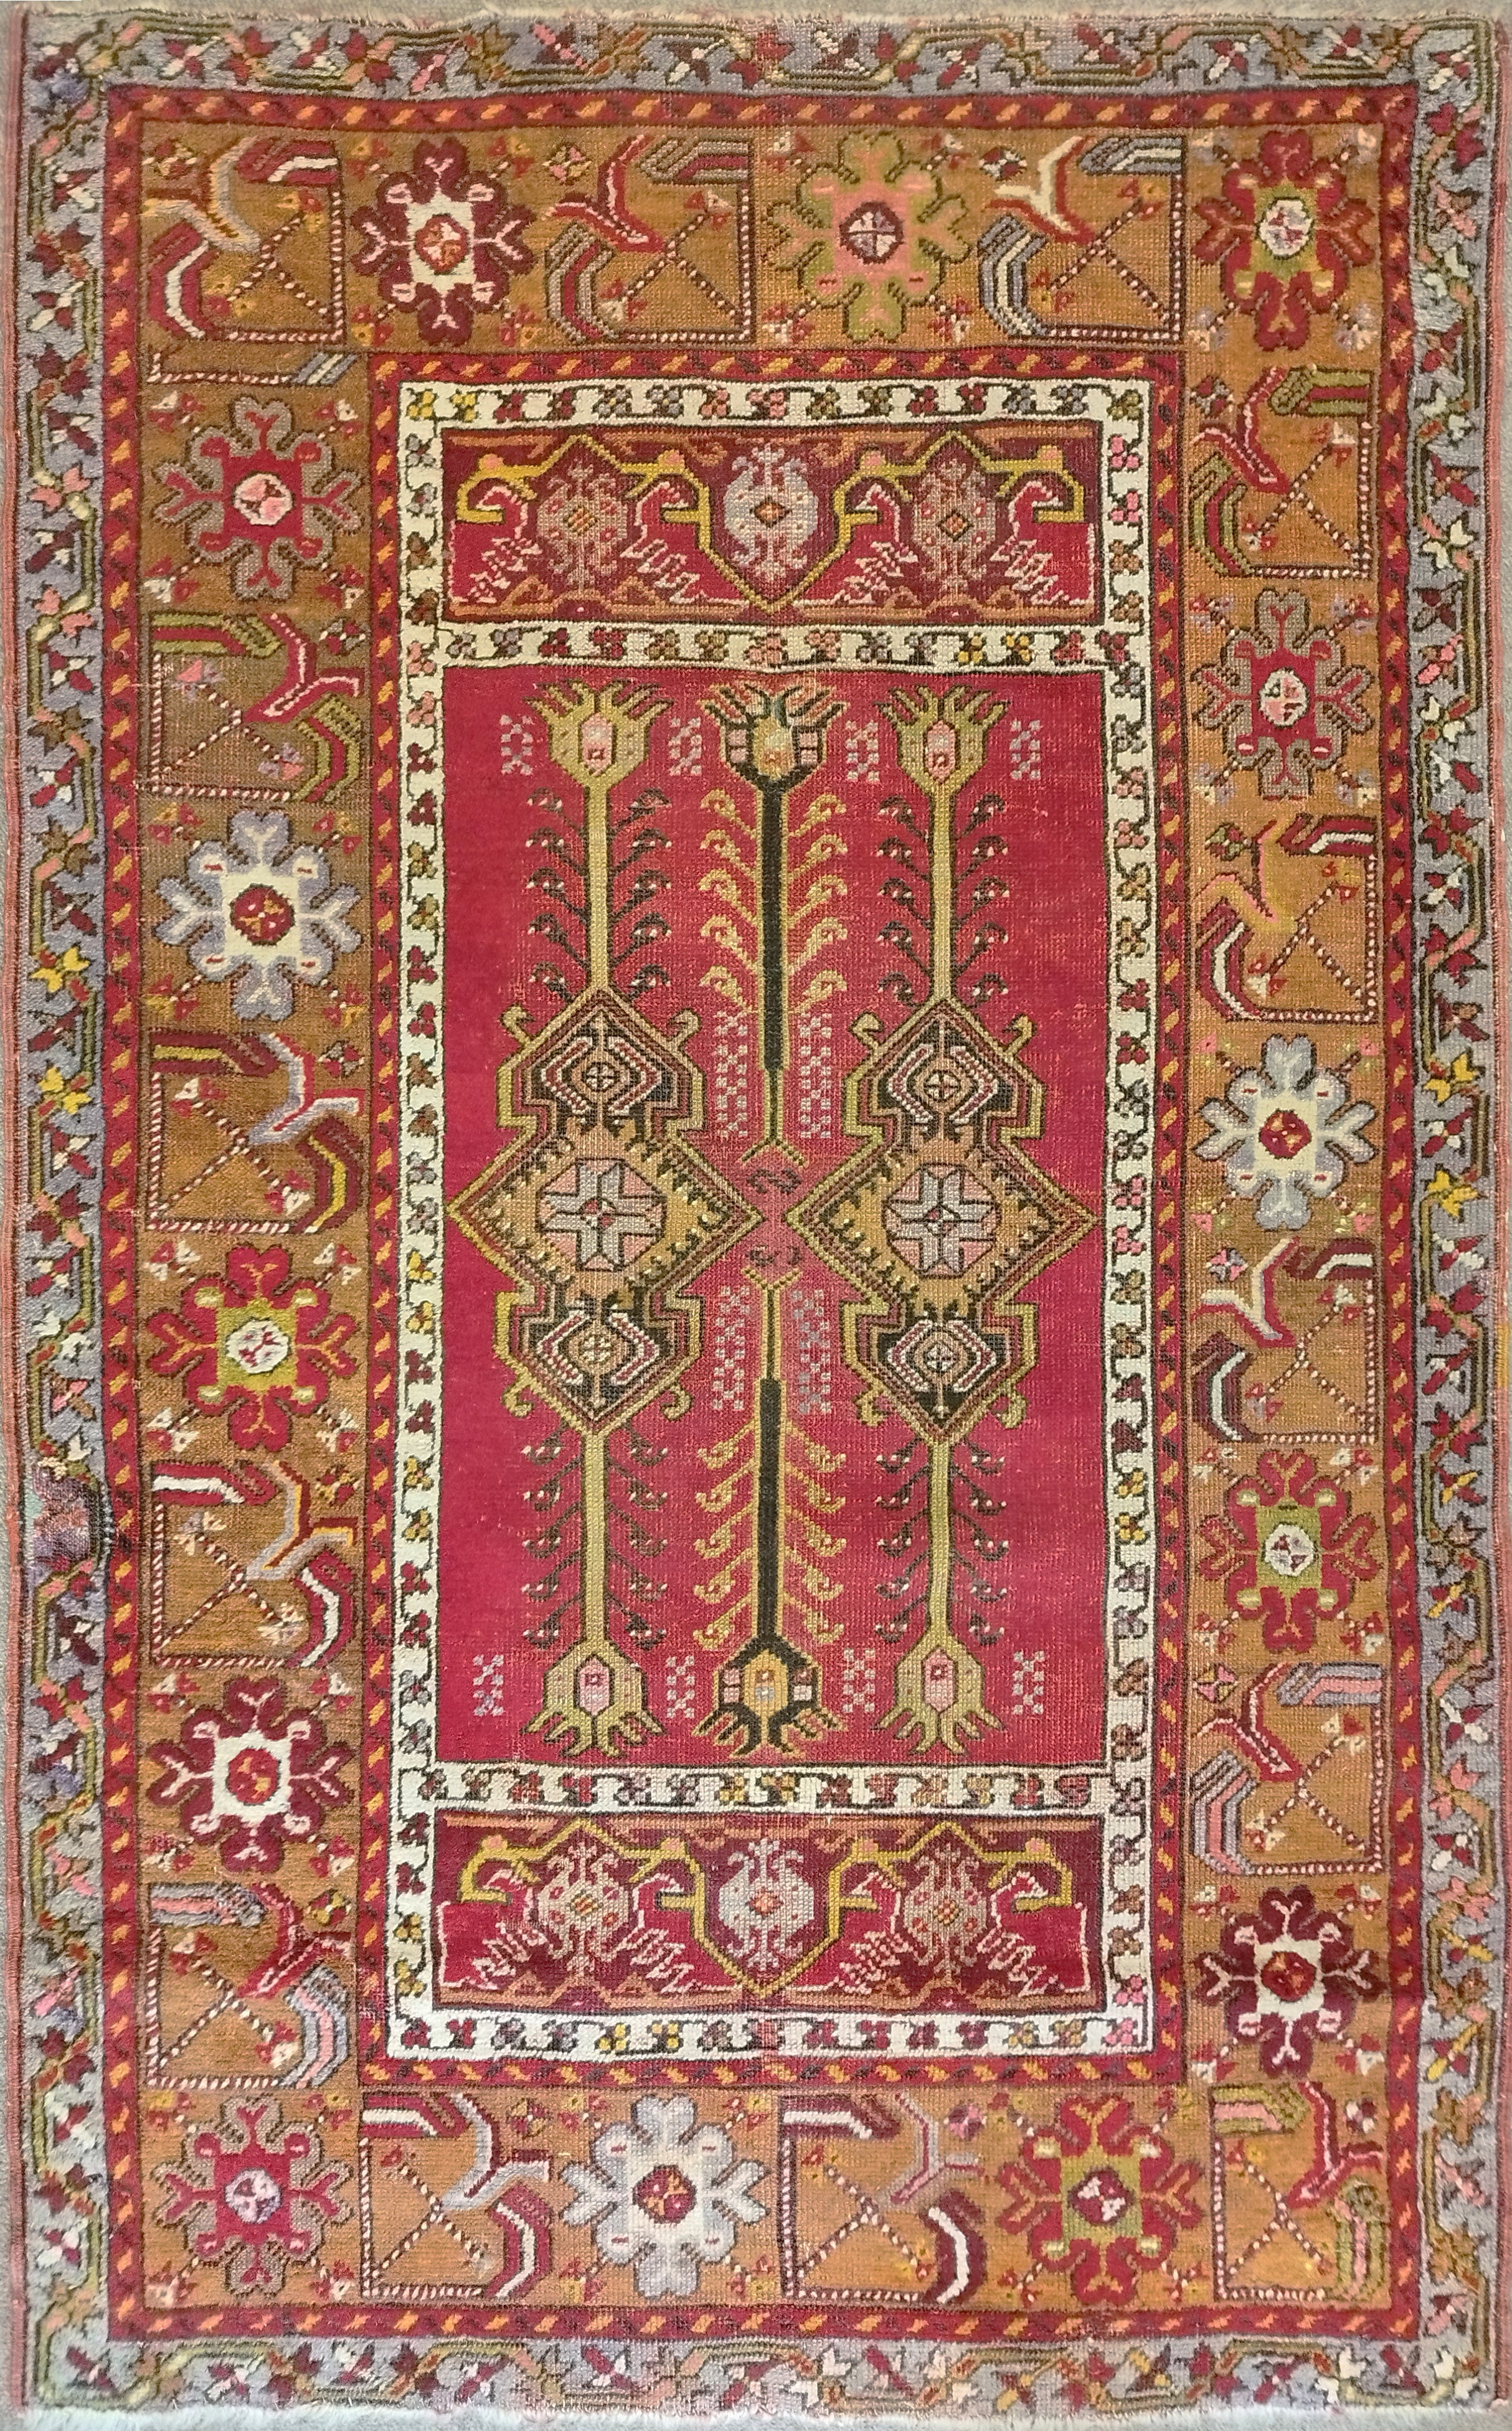  Kirchir Turkish Carpet, 19th Century - N° 728